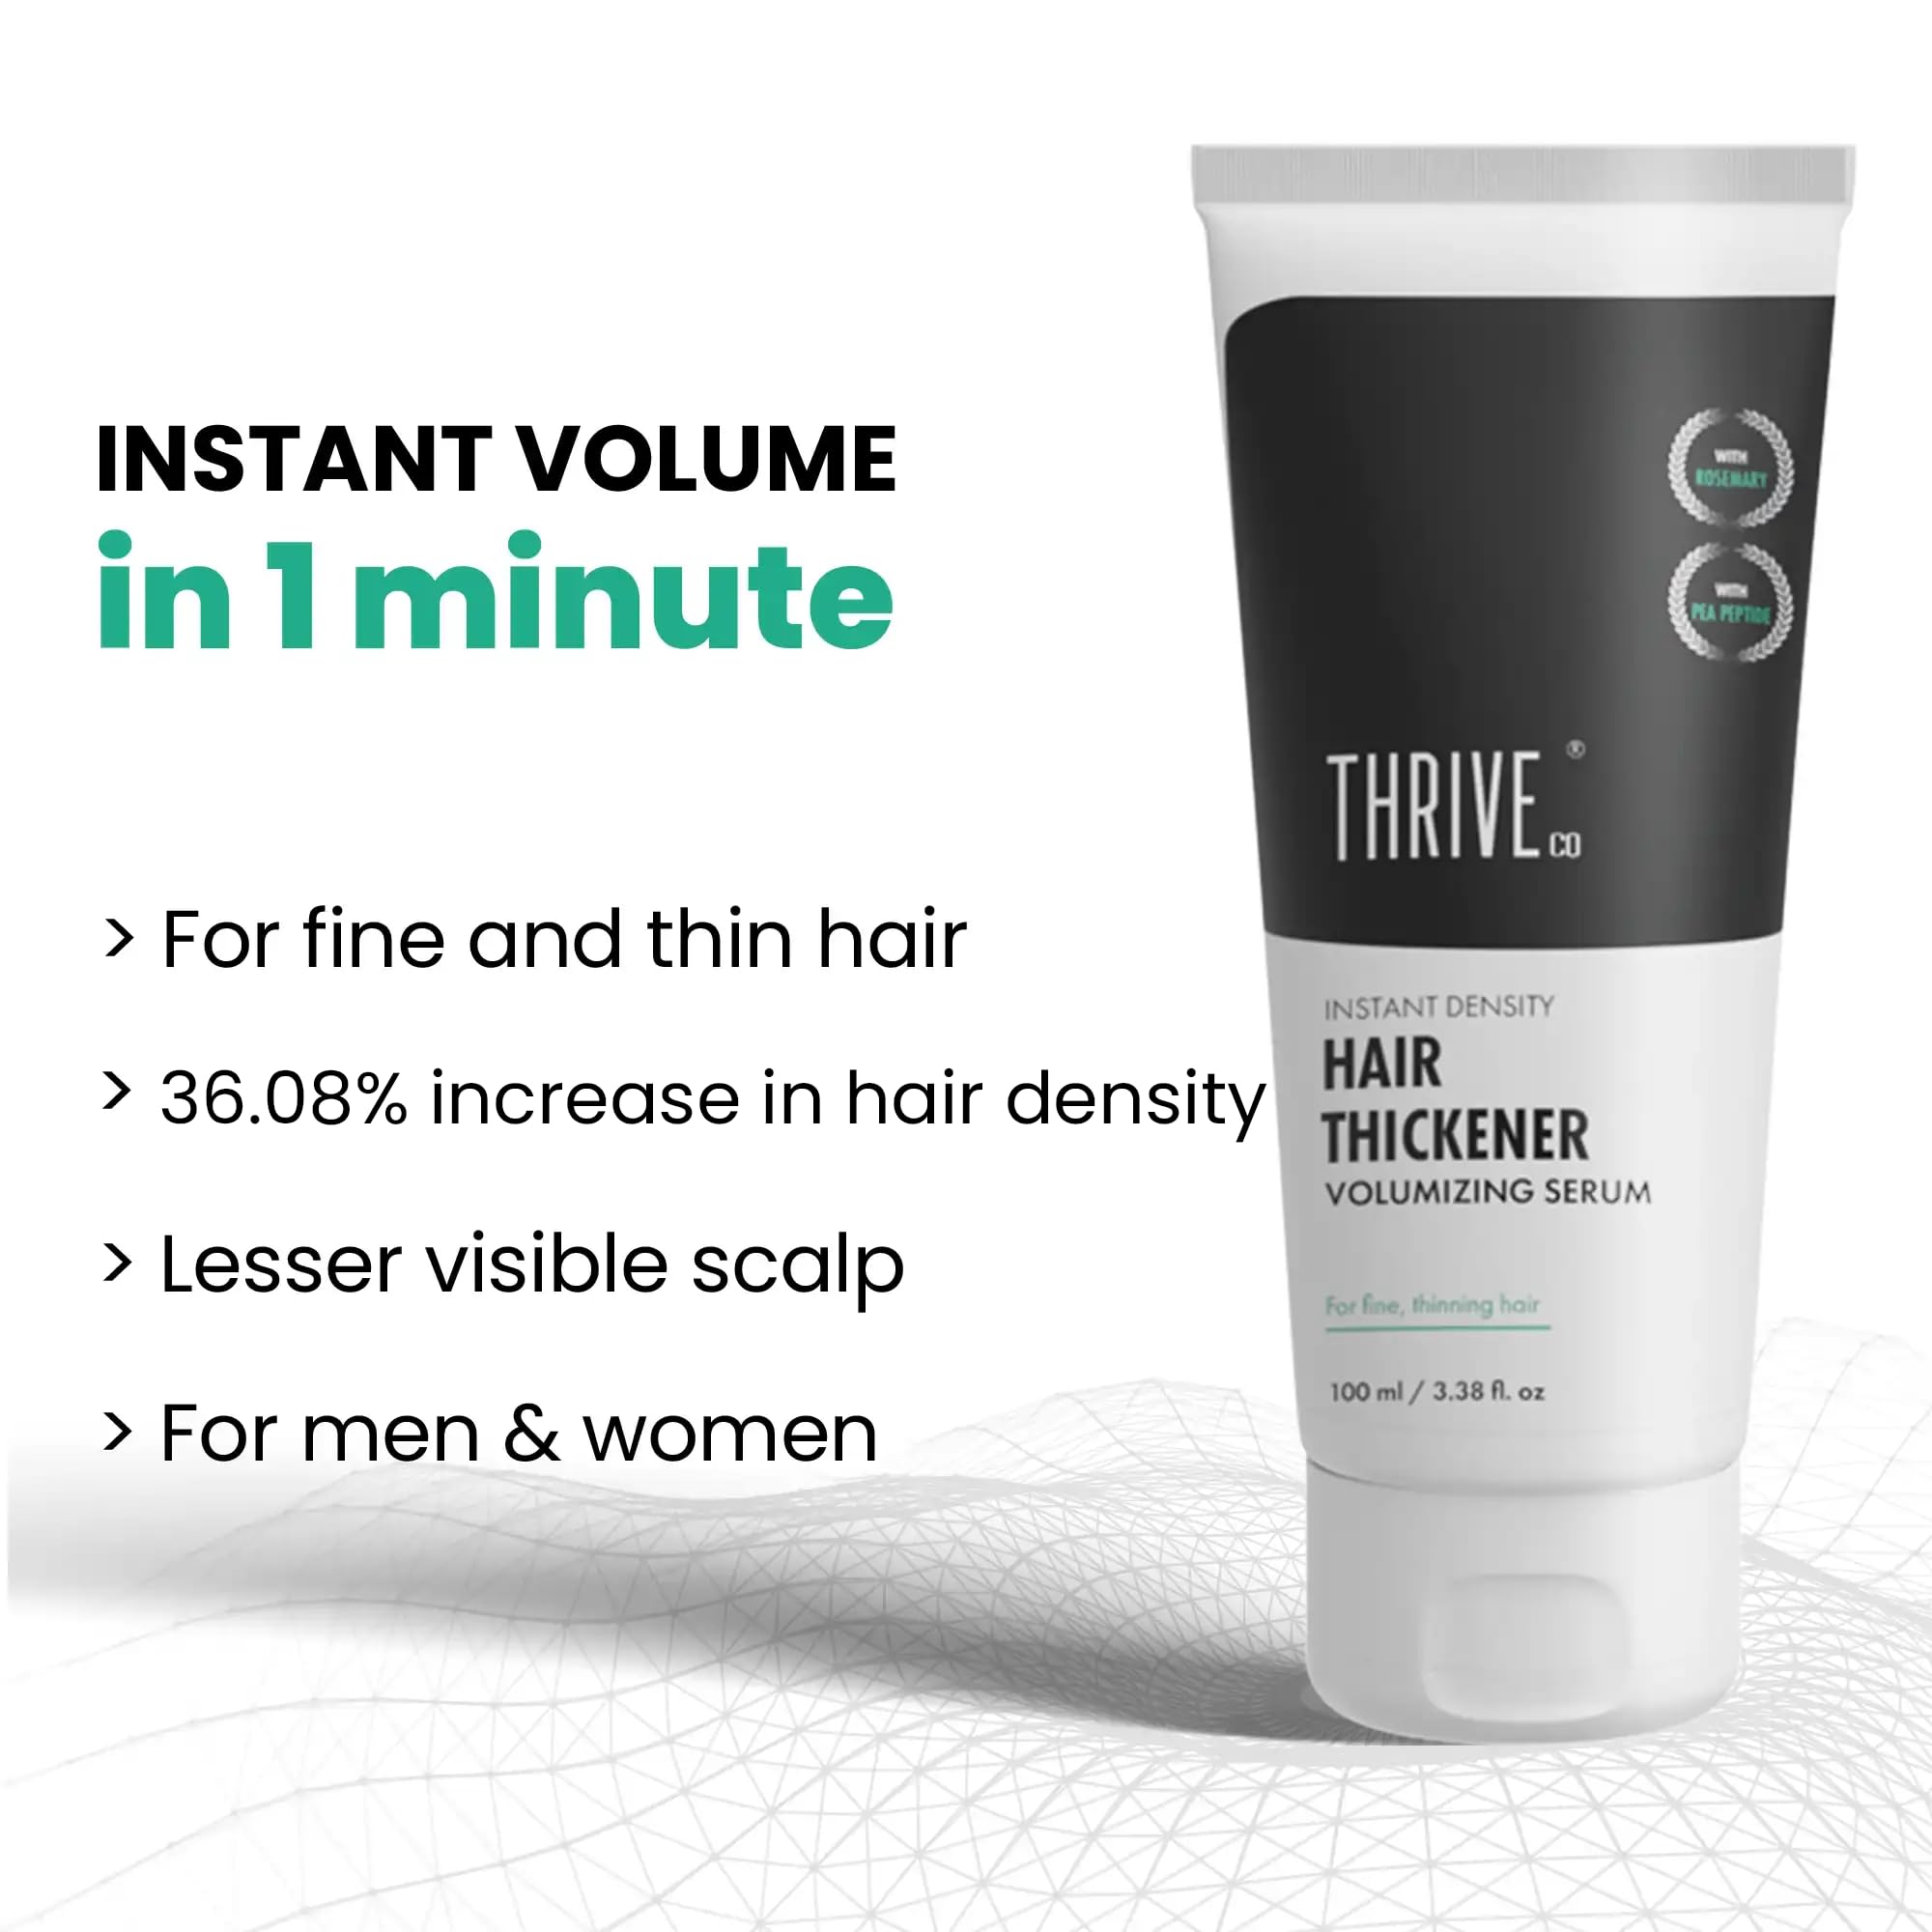 ThriveCo Hair Thickener Volumizing Serum,100ml | For Men & Women